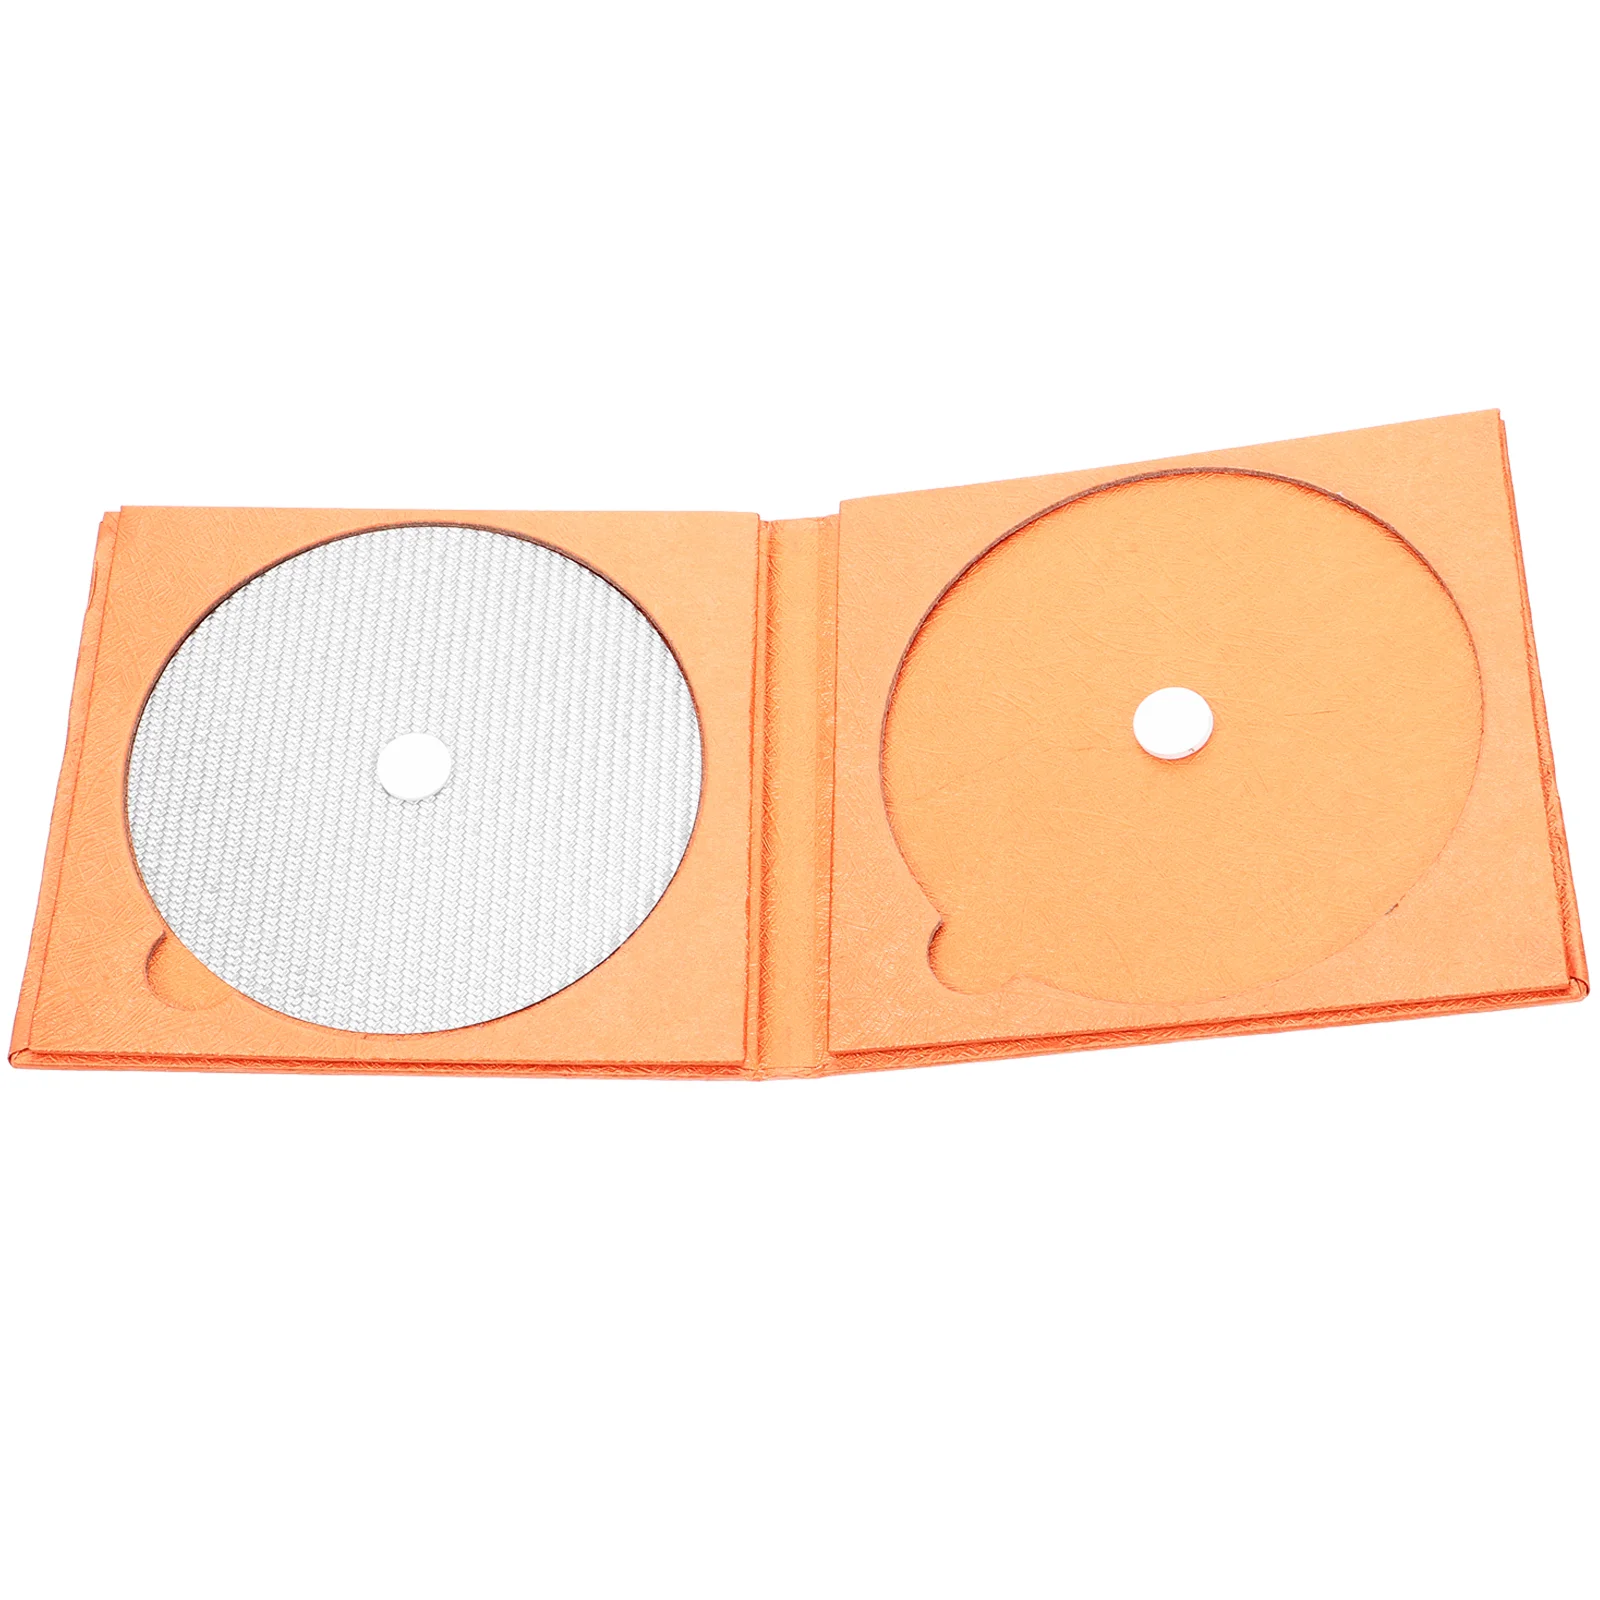 

CD DVD тюнинг Pad из углеродного волокна CD тюнинг мат профессиональные диски стабилизатор для CD